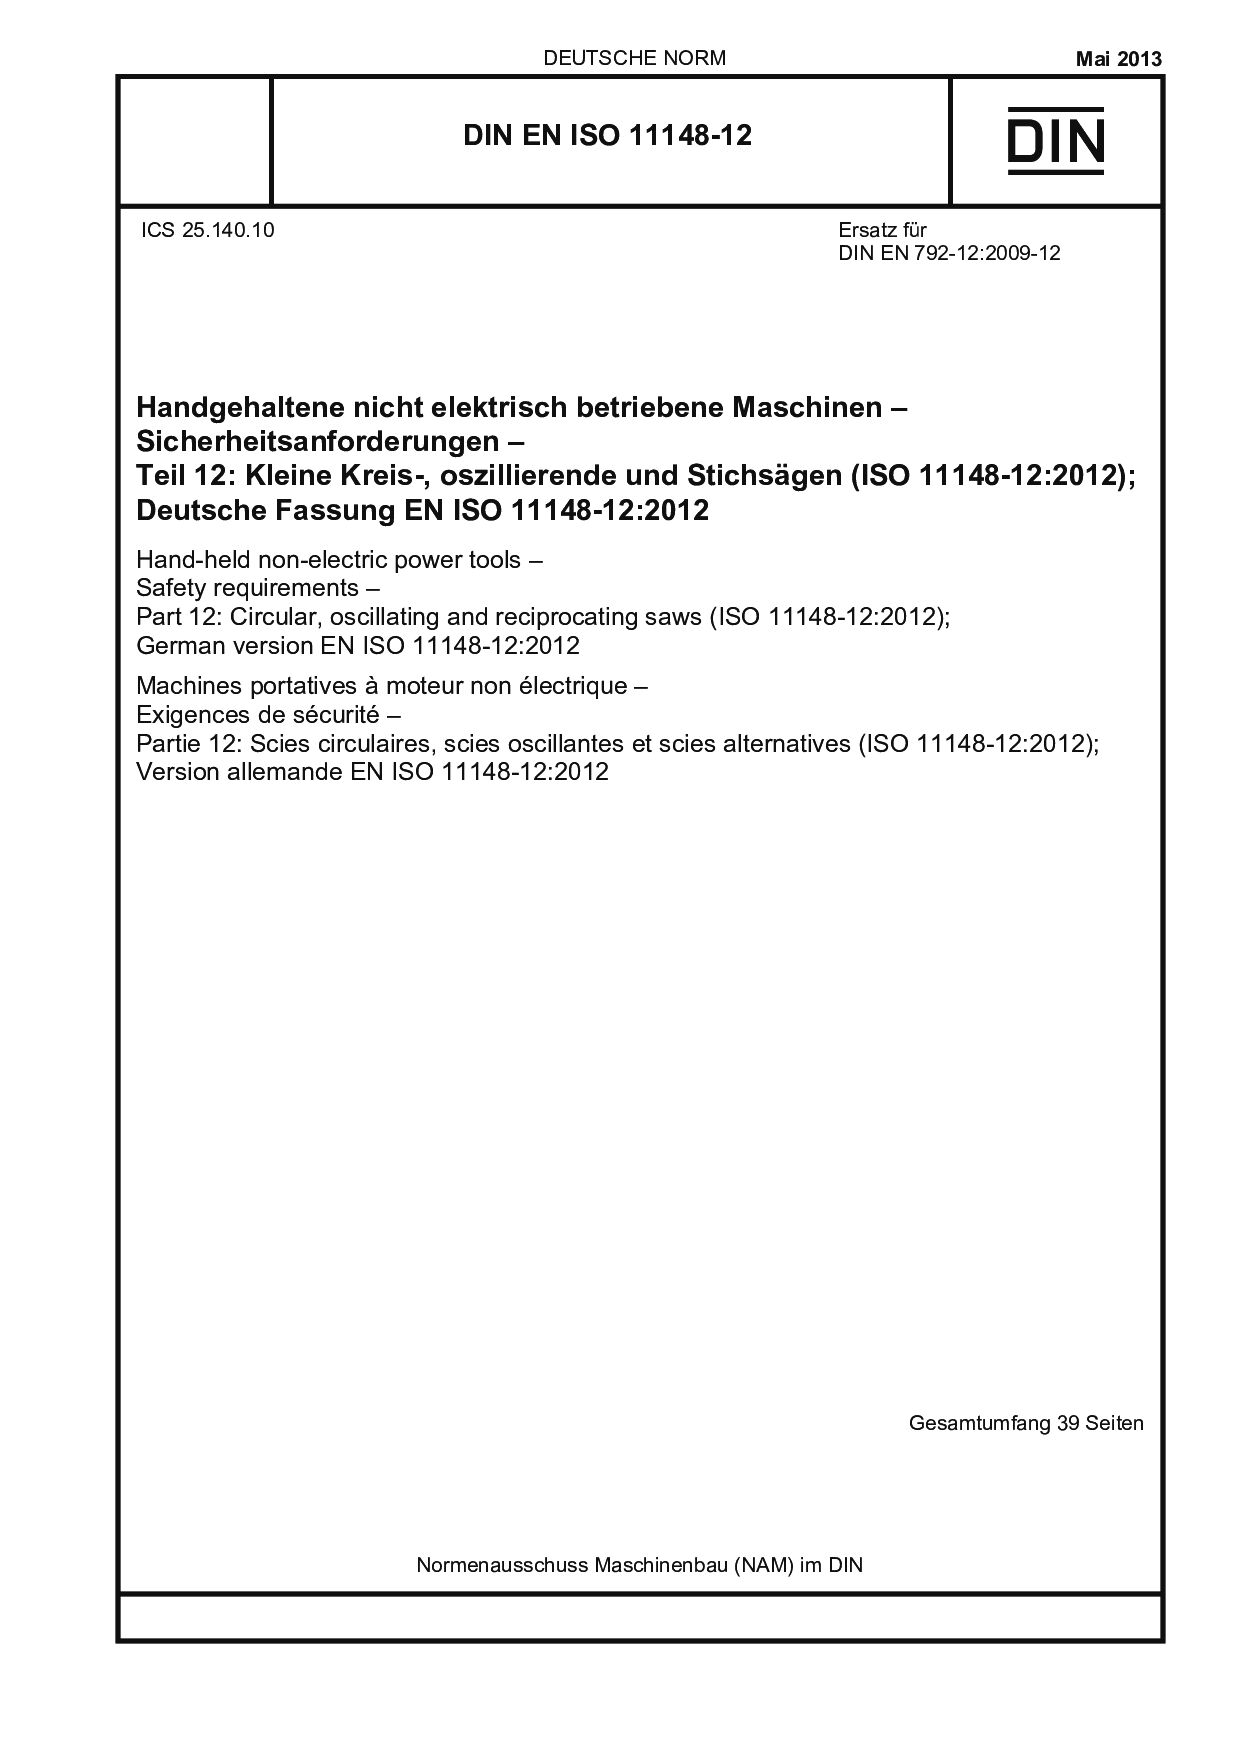 DIN EN ISO 11148-12:2013